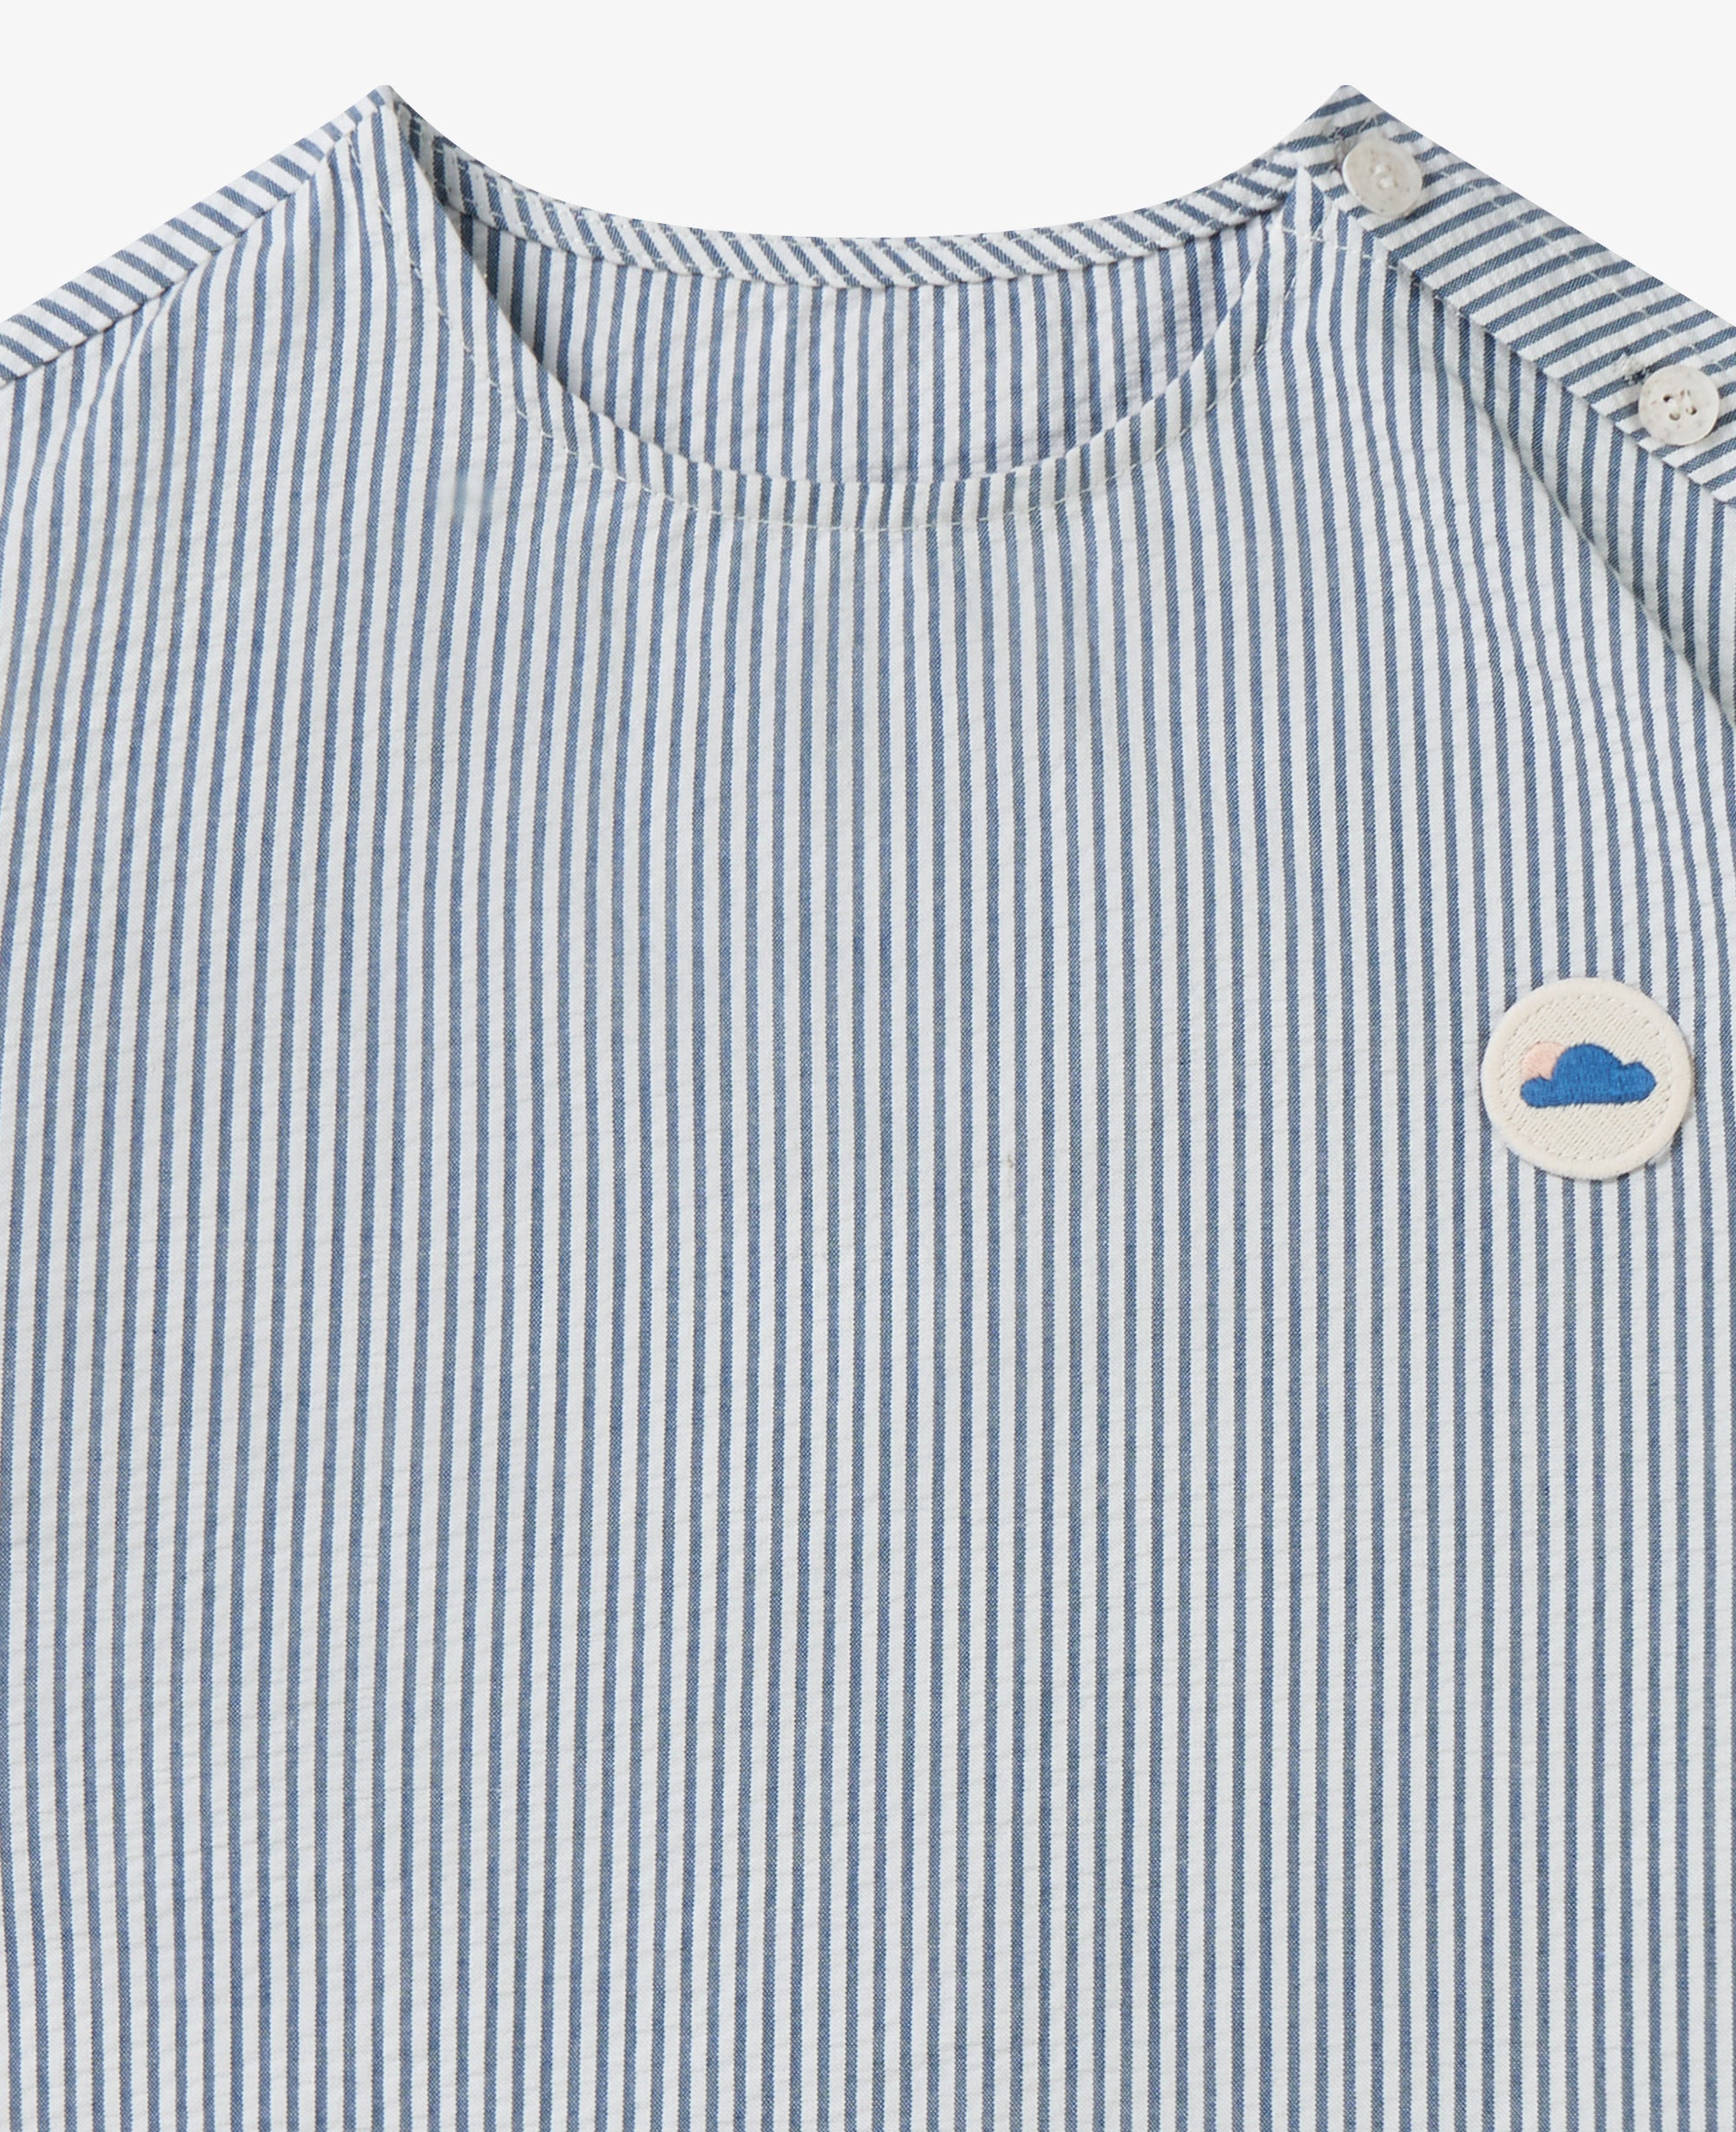 Seersucker Cotton Short Sleeve Top - Seabreeze Stripe